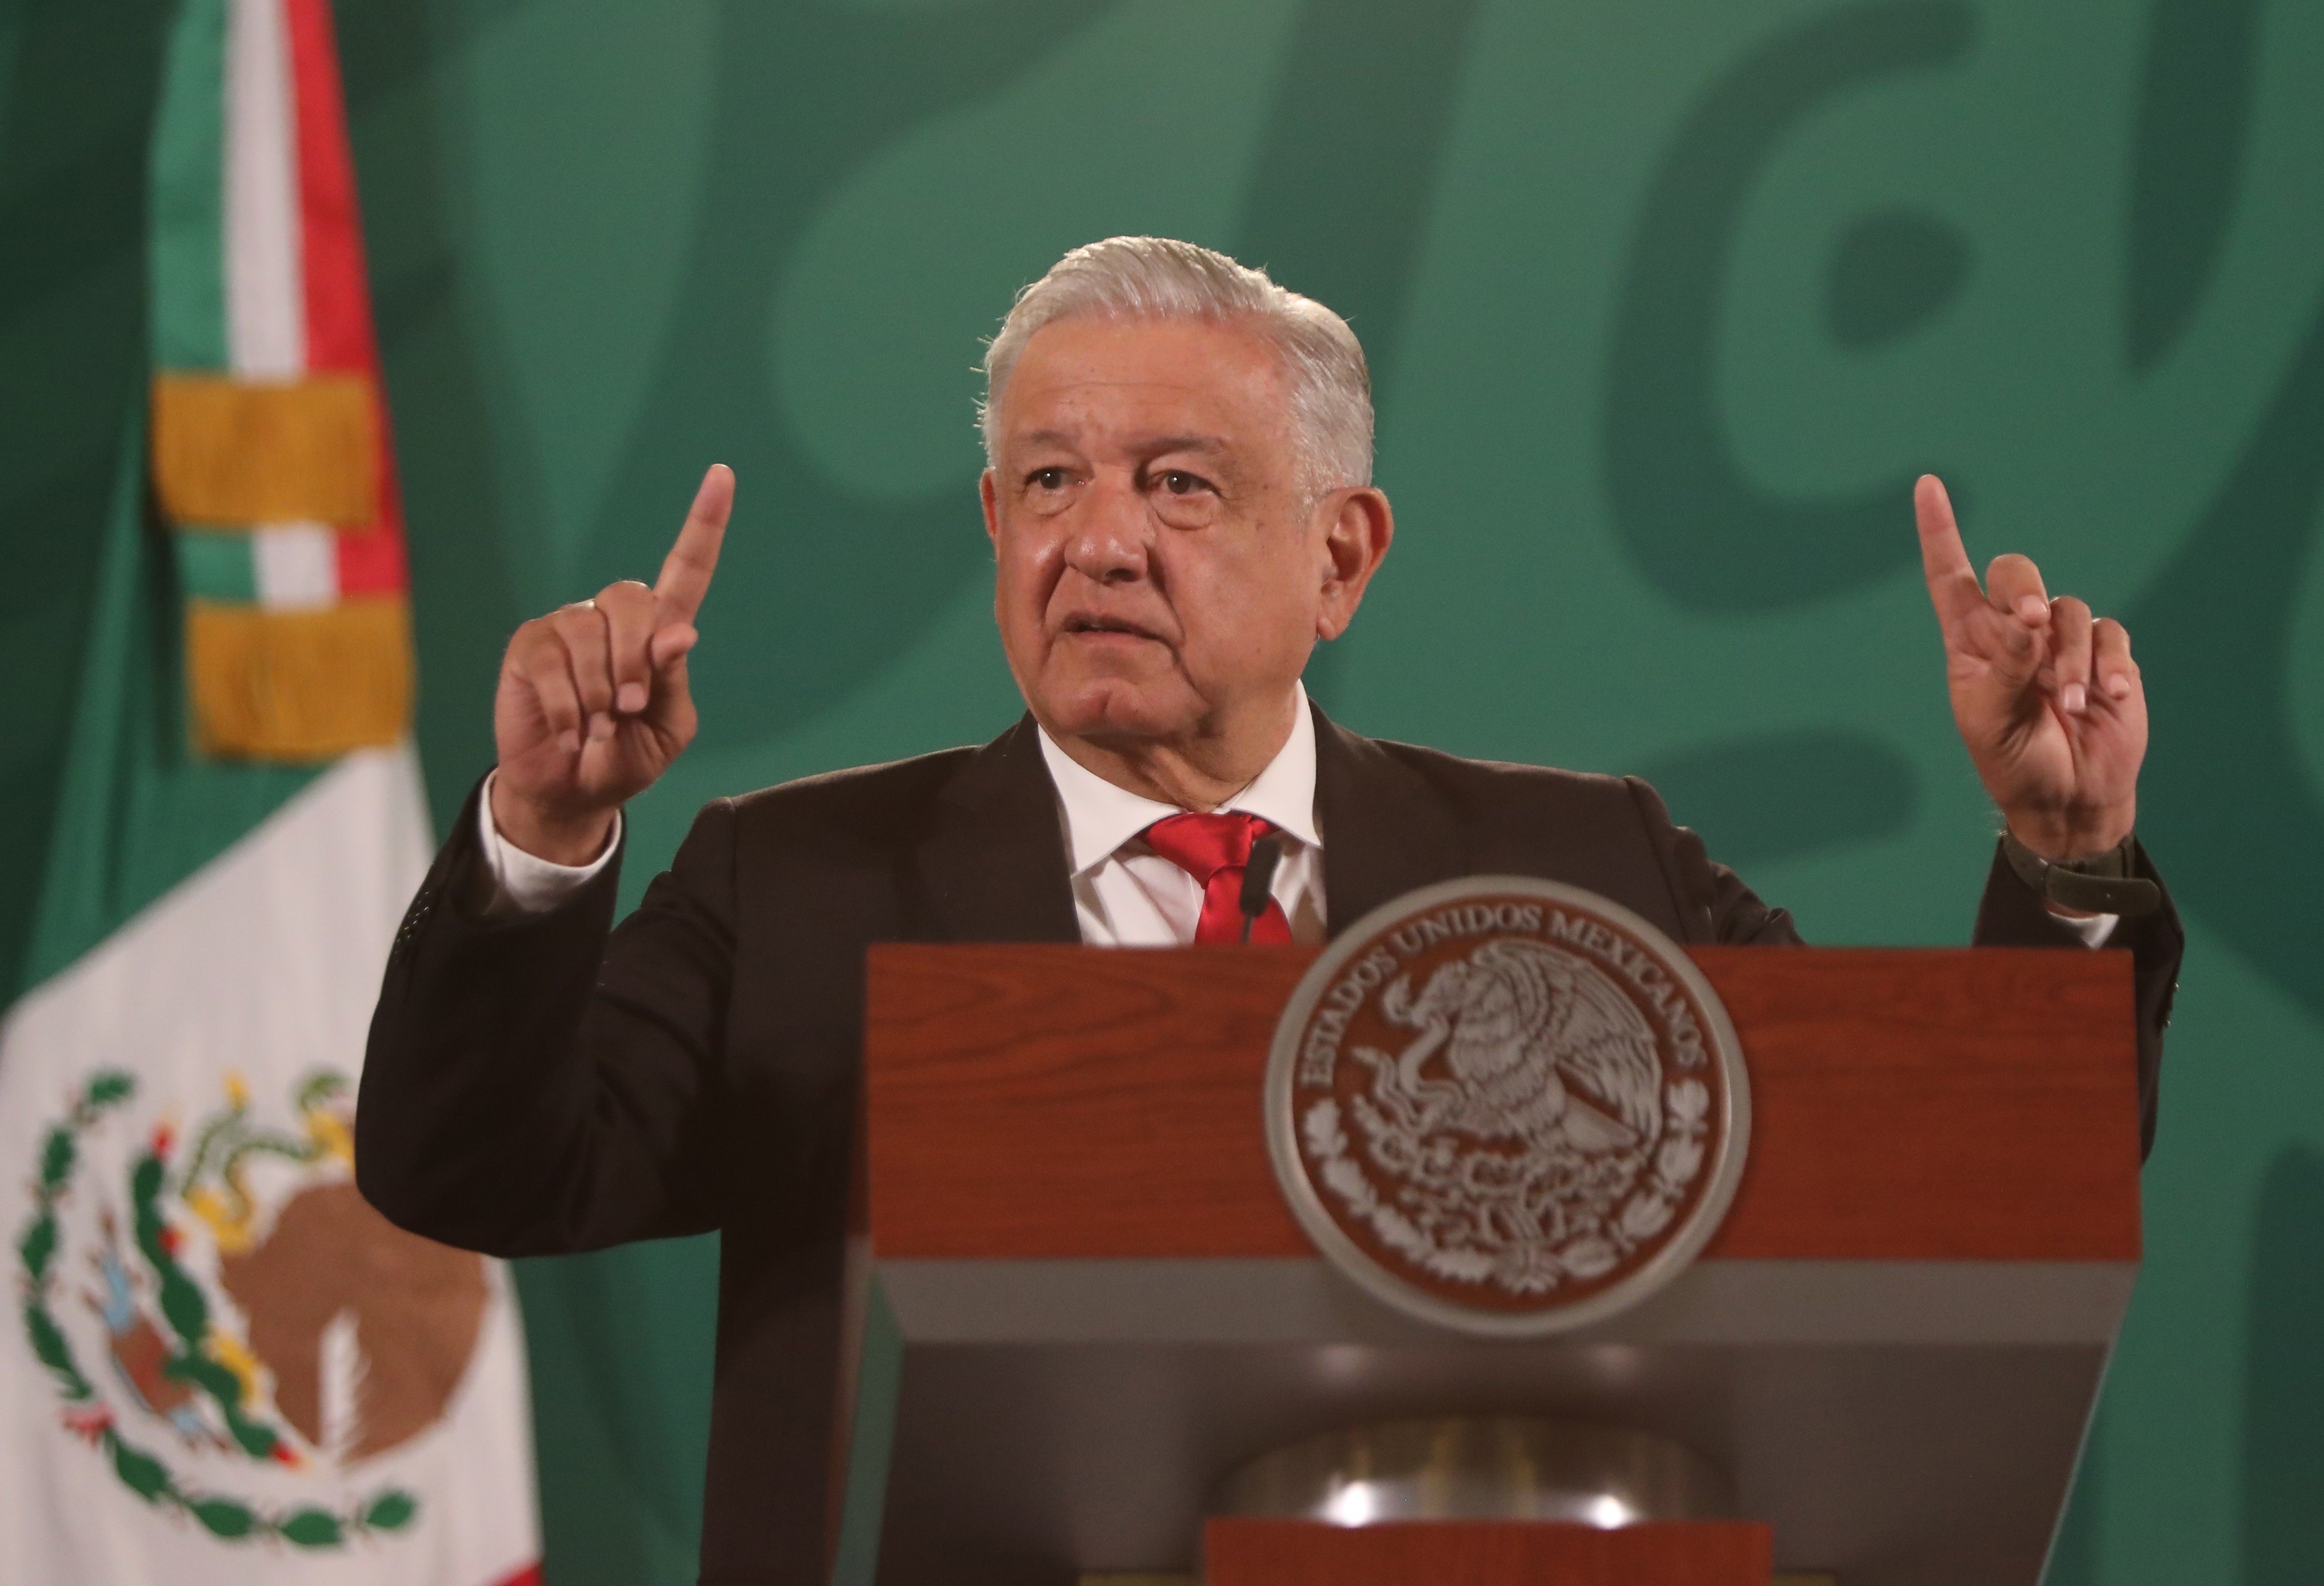 Aprobación de Andrés Manuel López Obrador aumentó al 63.8% en el mes patrio: encuestas